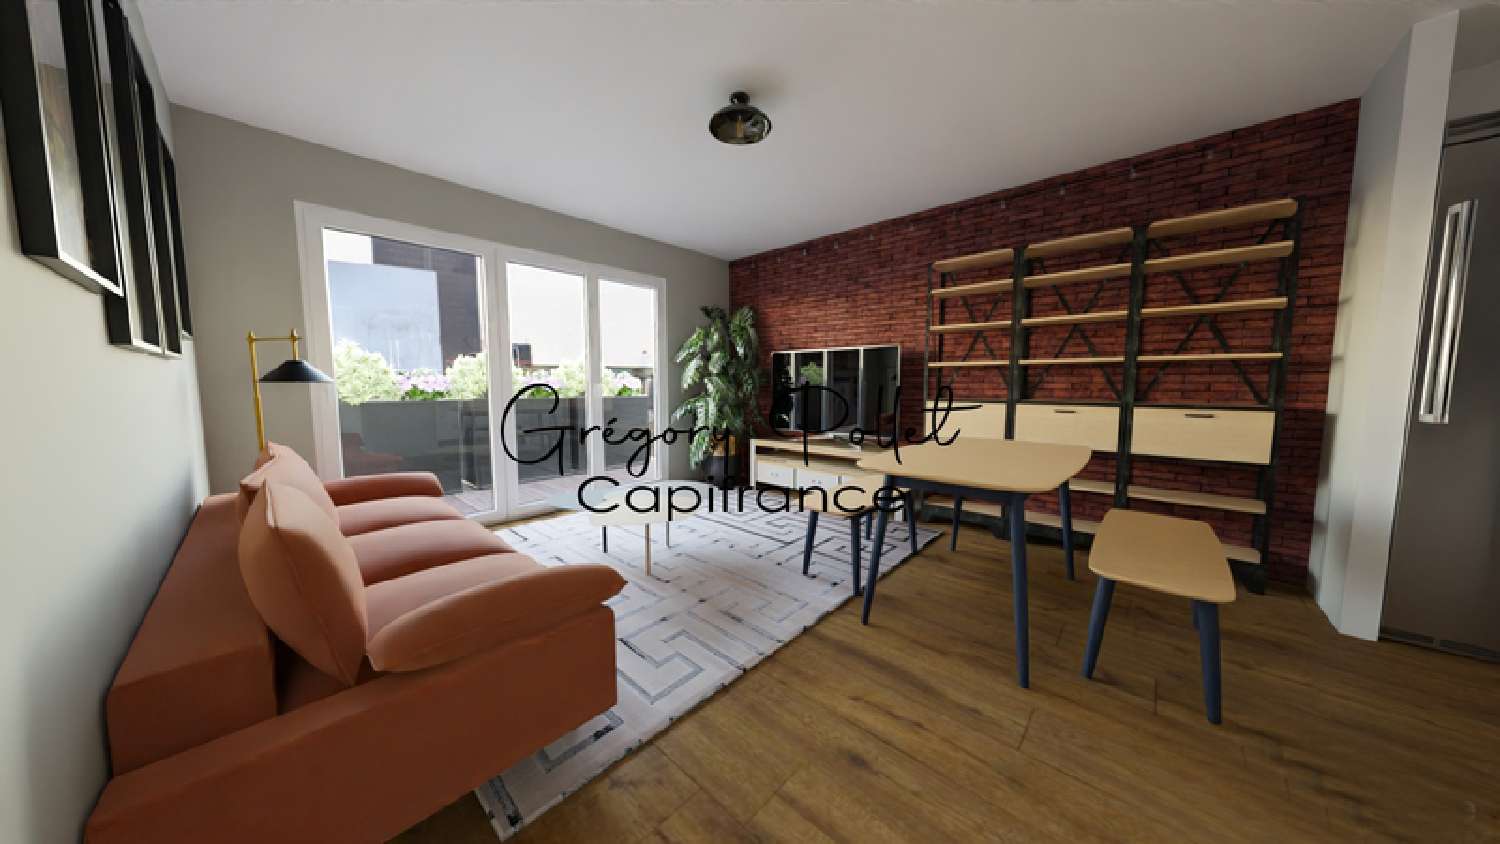  for sale apartment Arques Pas-de-Calais 1